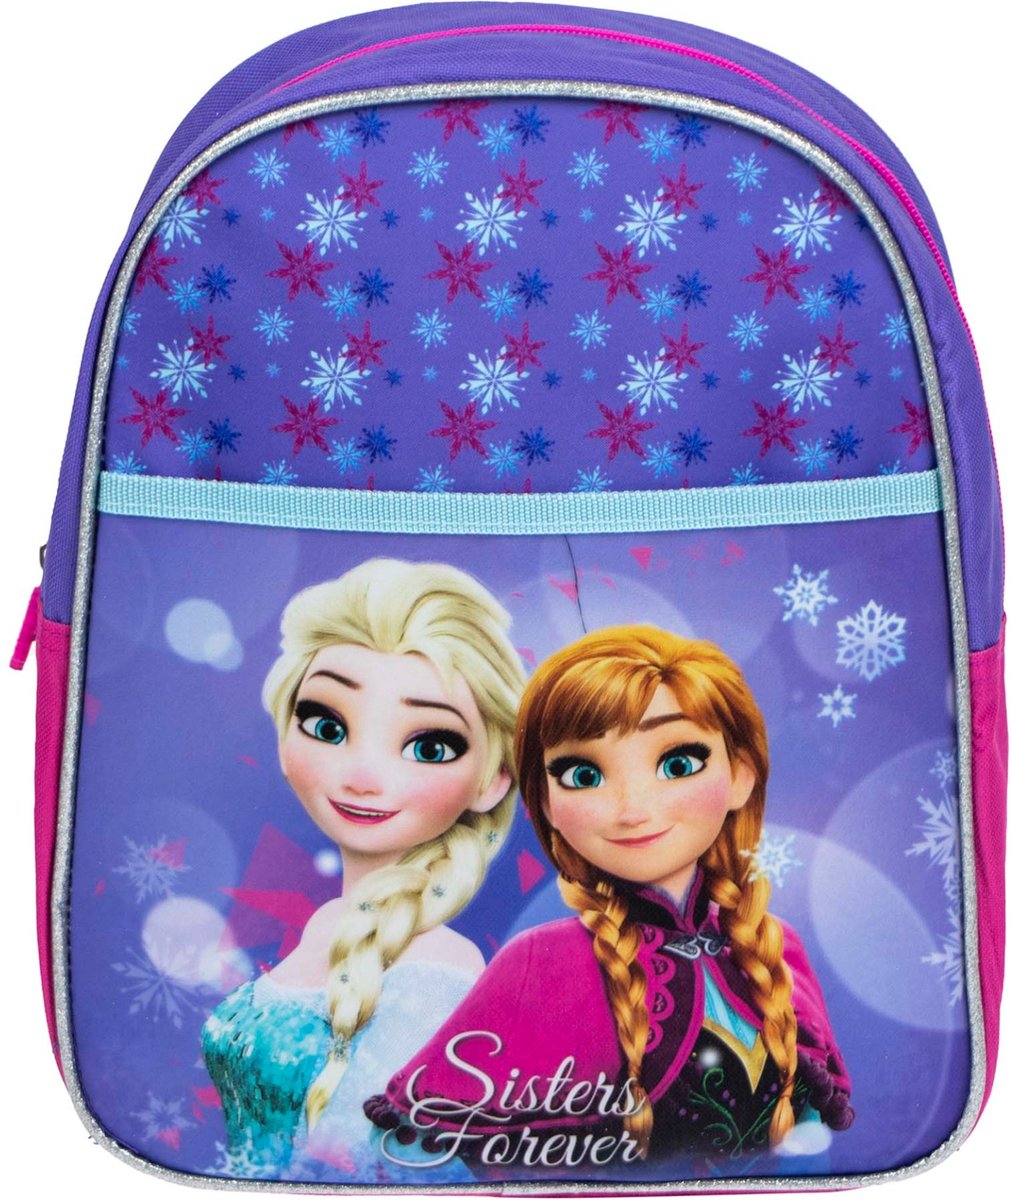 商品説明 商品名 ディズニー アナと雪の女王 バックパック リュックサック Disney Frozen Backpack　31x 25 x 10cm 仕様 商品サイズ：31x 25 x 10cm 素材：ポリエステル ファスナーポケット1ヶ所。フロントポケット1か所。 ご注意事項 モニターの発色の具合によって実際のものと色が異なる場合がございます。ご了承ください。 その他 Disney公式ライセンス商品。